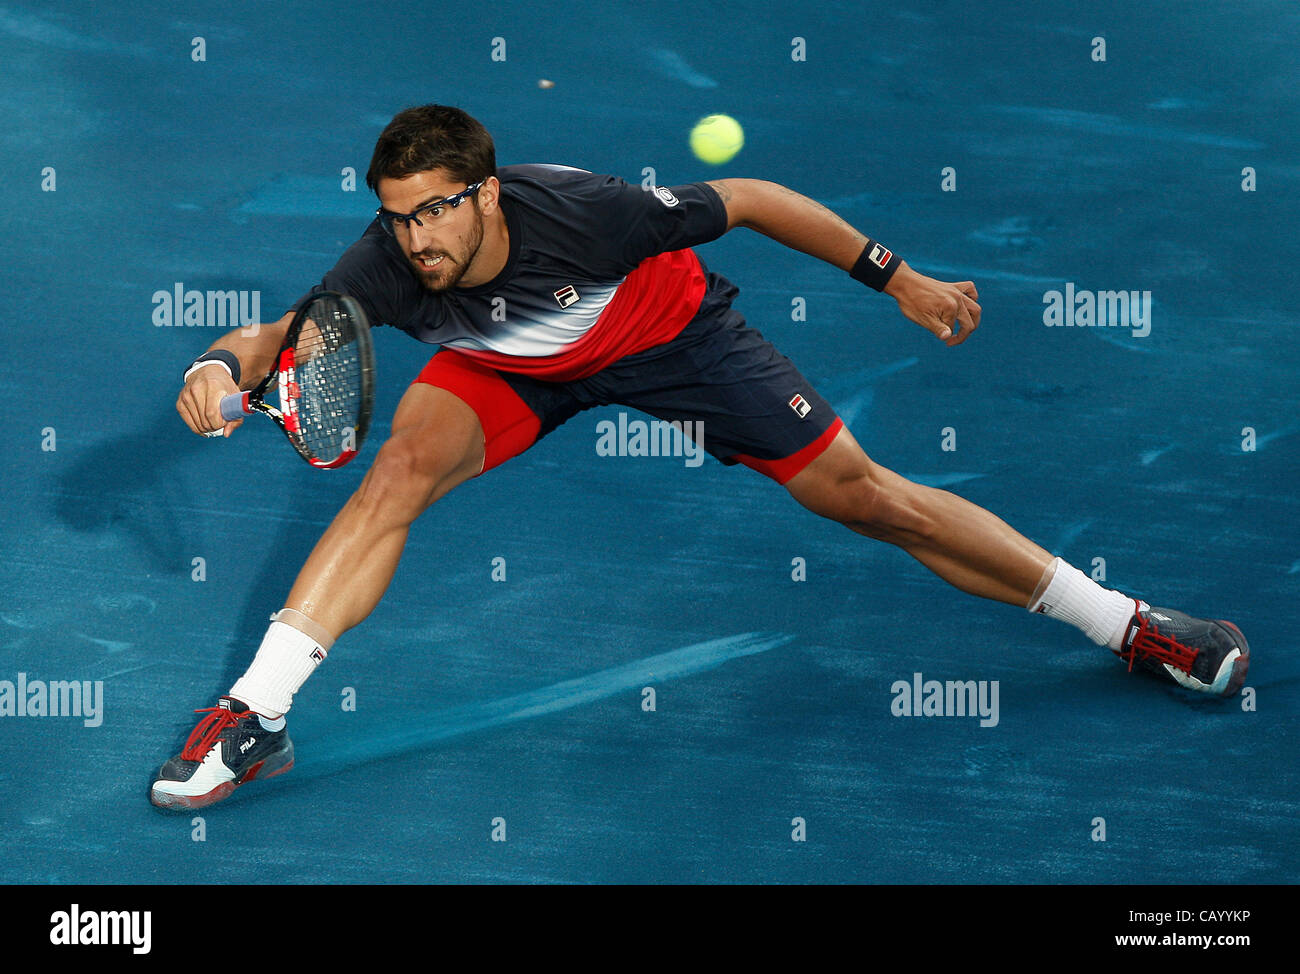 11.05.2012 Madrid, Spagna. Janko TIPSAREVIC in azione contro Novak Djokovic durante i quarti di finale della Madrid Open Tennis Tournament. Foto Stock